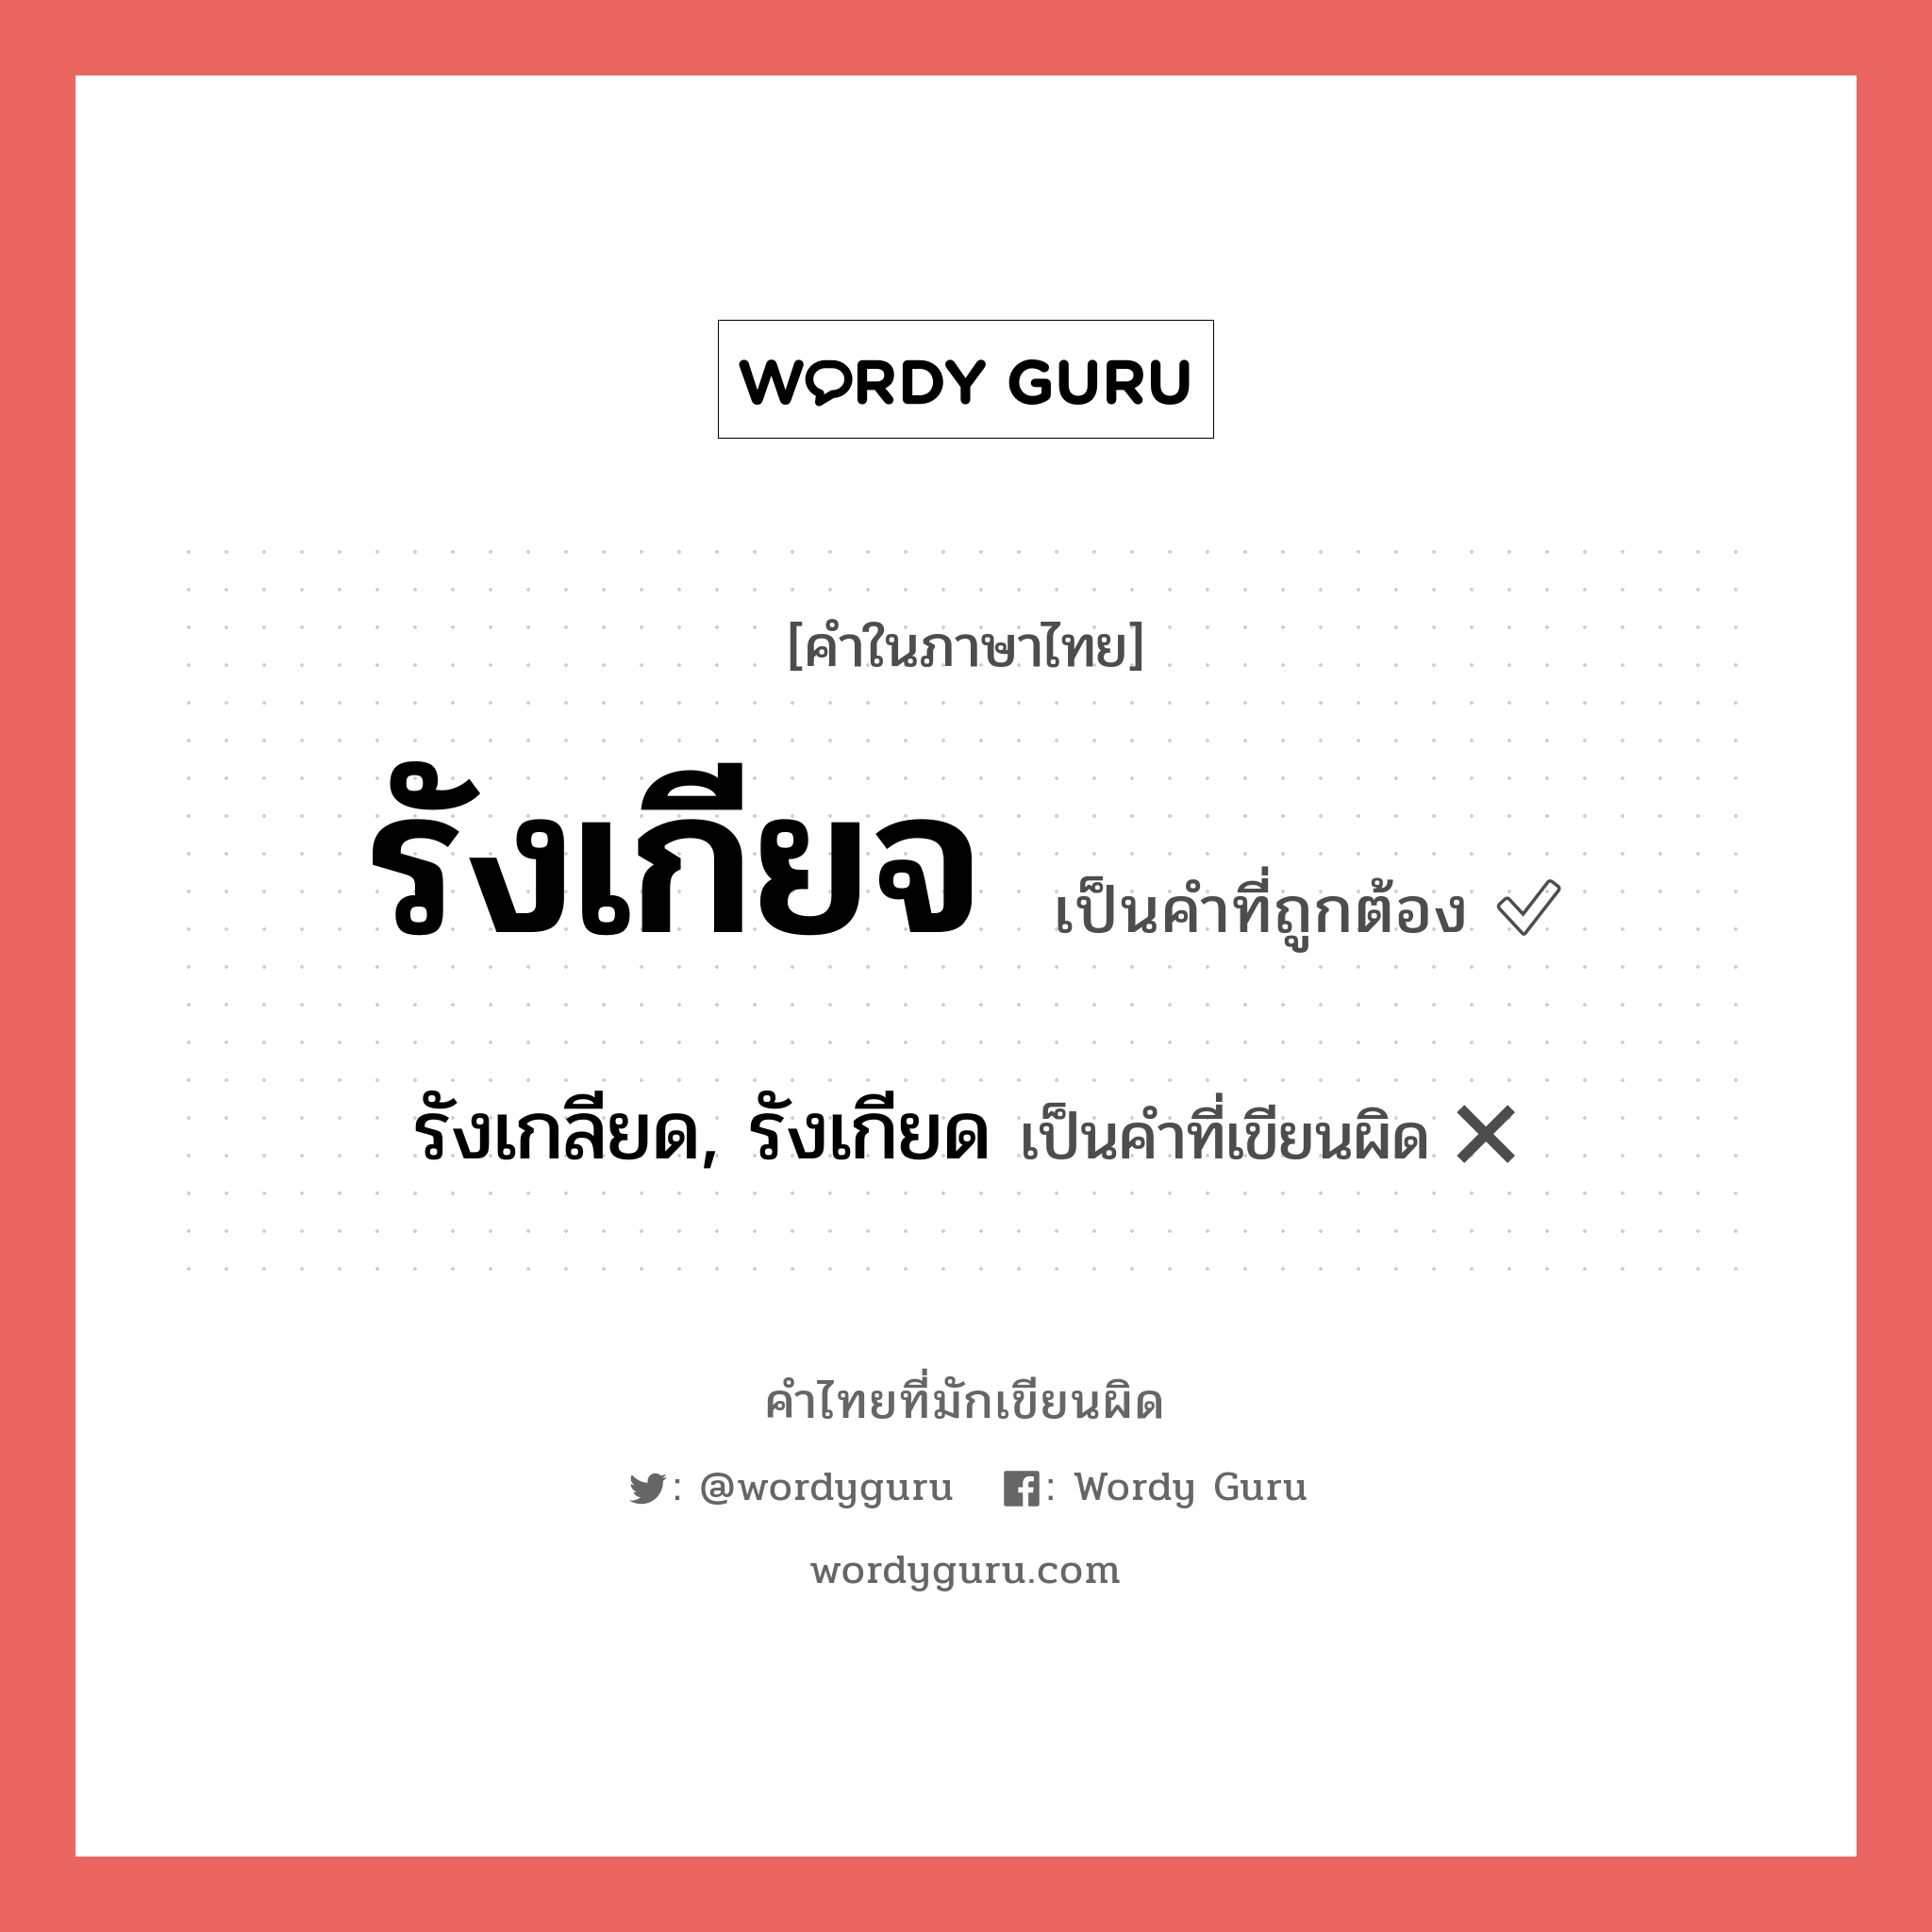 รังเกียจ หรือ รังเกลียด, รังเกียด คำไหนเขียนถูก?, คำในภาษาไทยที่มักเขียนผิด รังเกียจ คำที่ผิด ❌ รังเกลียด, รังเกียด